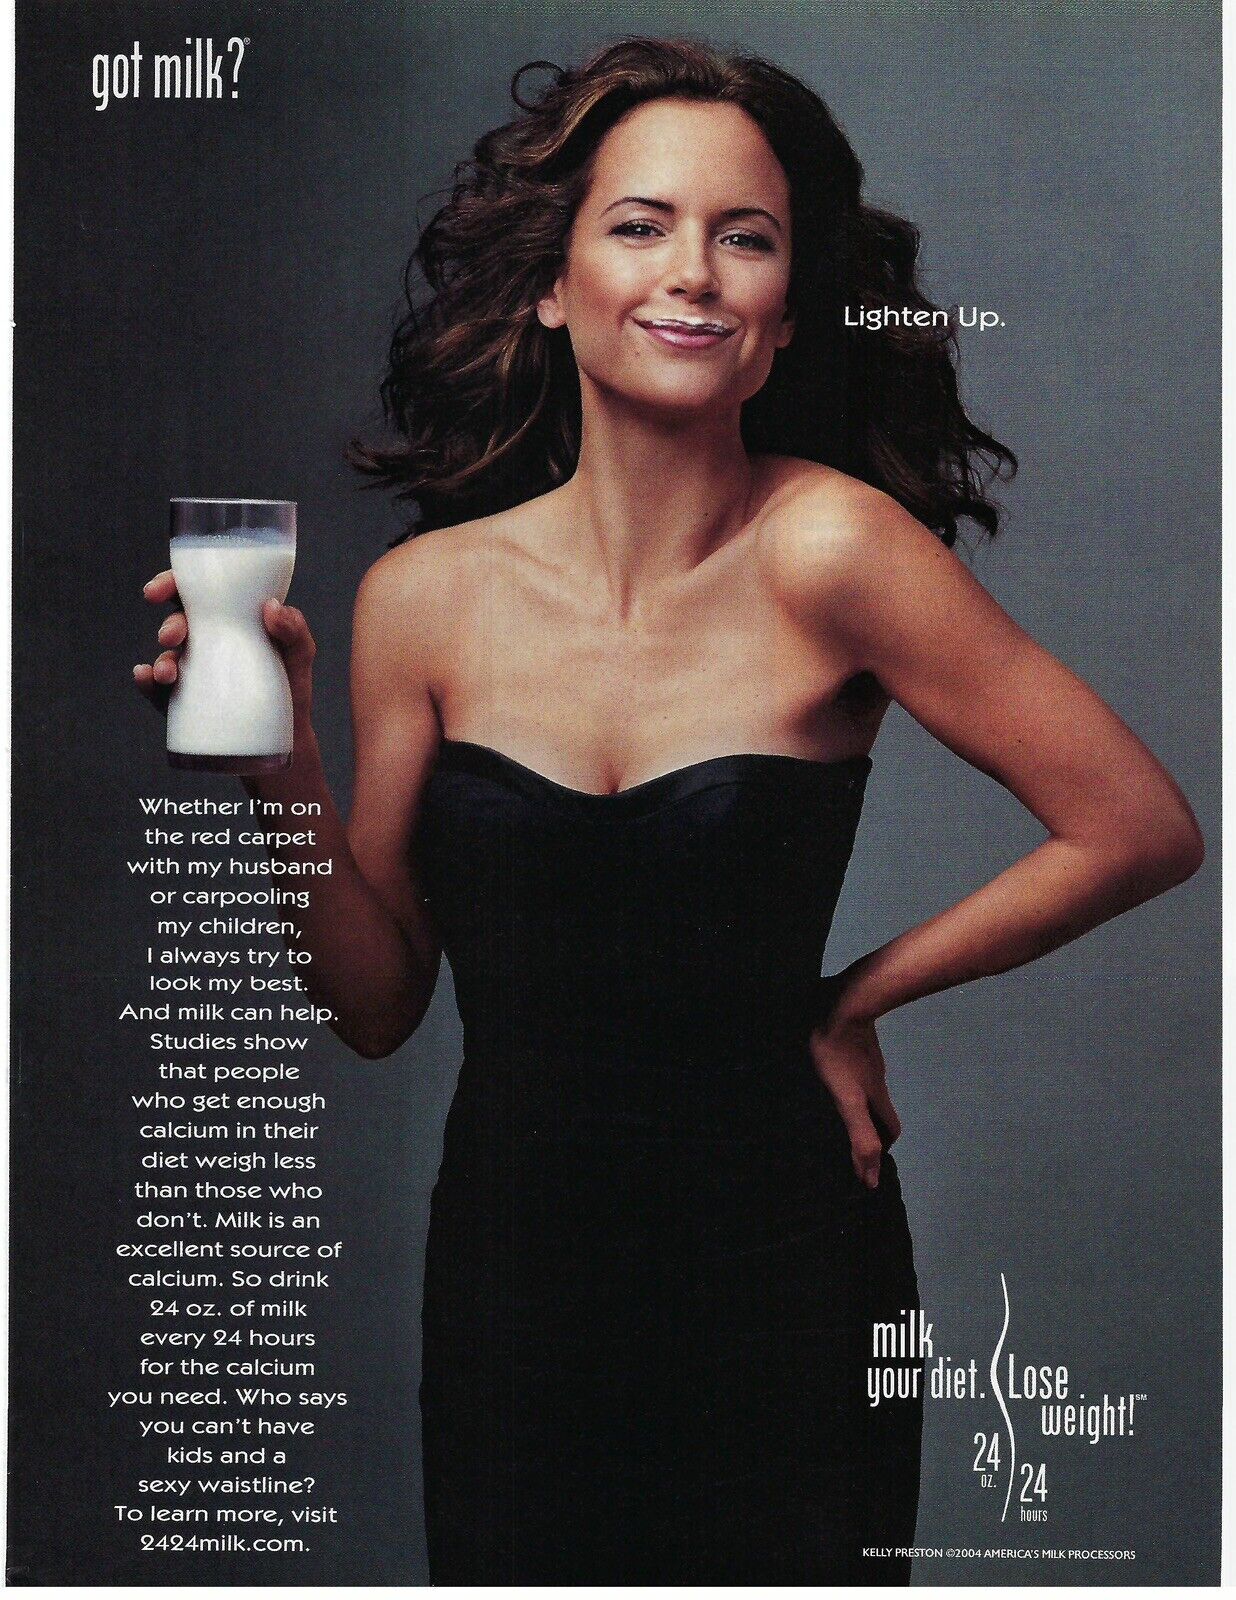 2004 Got Milk? Kelly Preston Lighten Up Diet Lose Weight Retro Print Ad/Poster